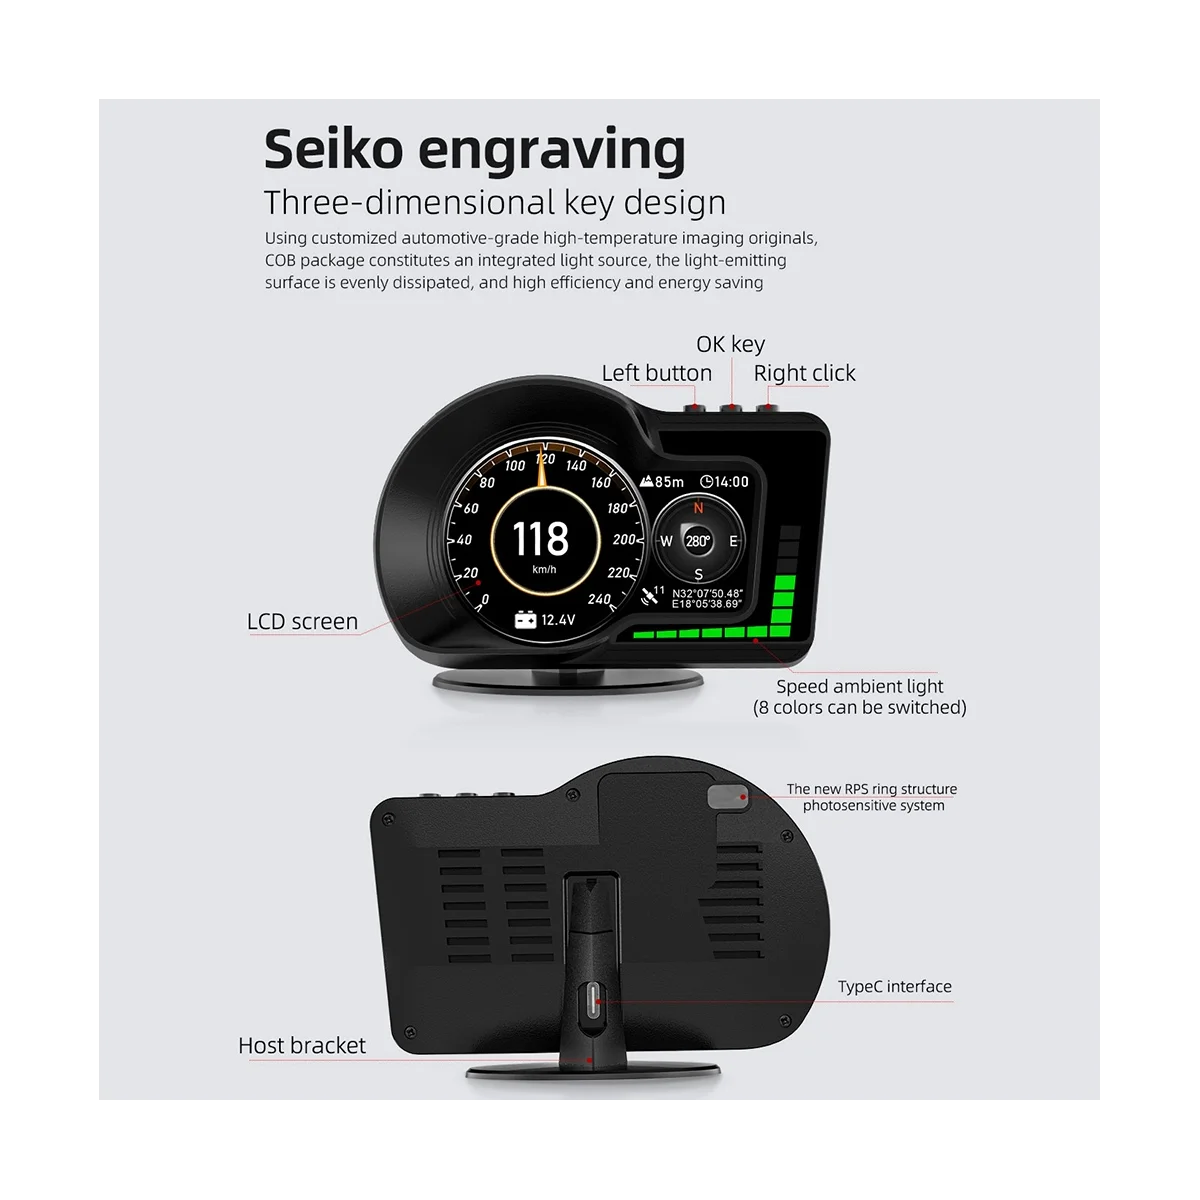 

OBD2 EOBD Многофункциональный ЖК-дисплей OBD + GPS HUD автомобильный компьютер Автомобильный дисплей в режиме реального времени спидометр для всех автомобилей